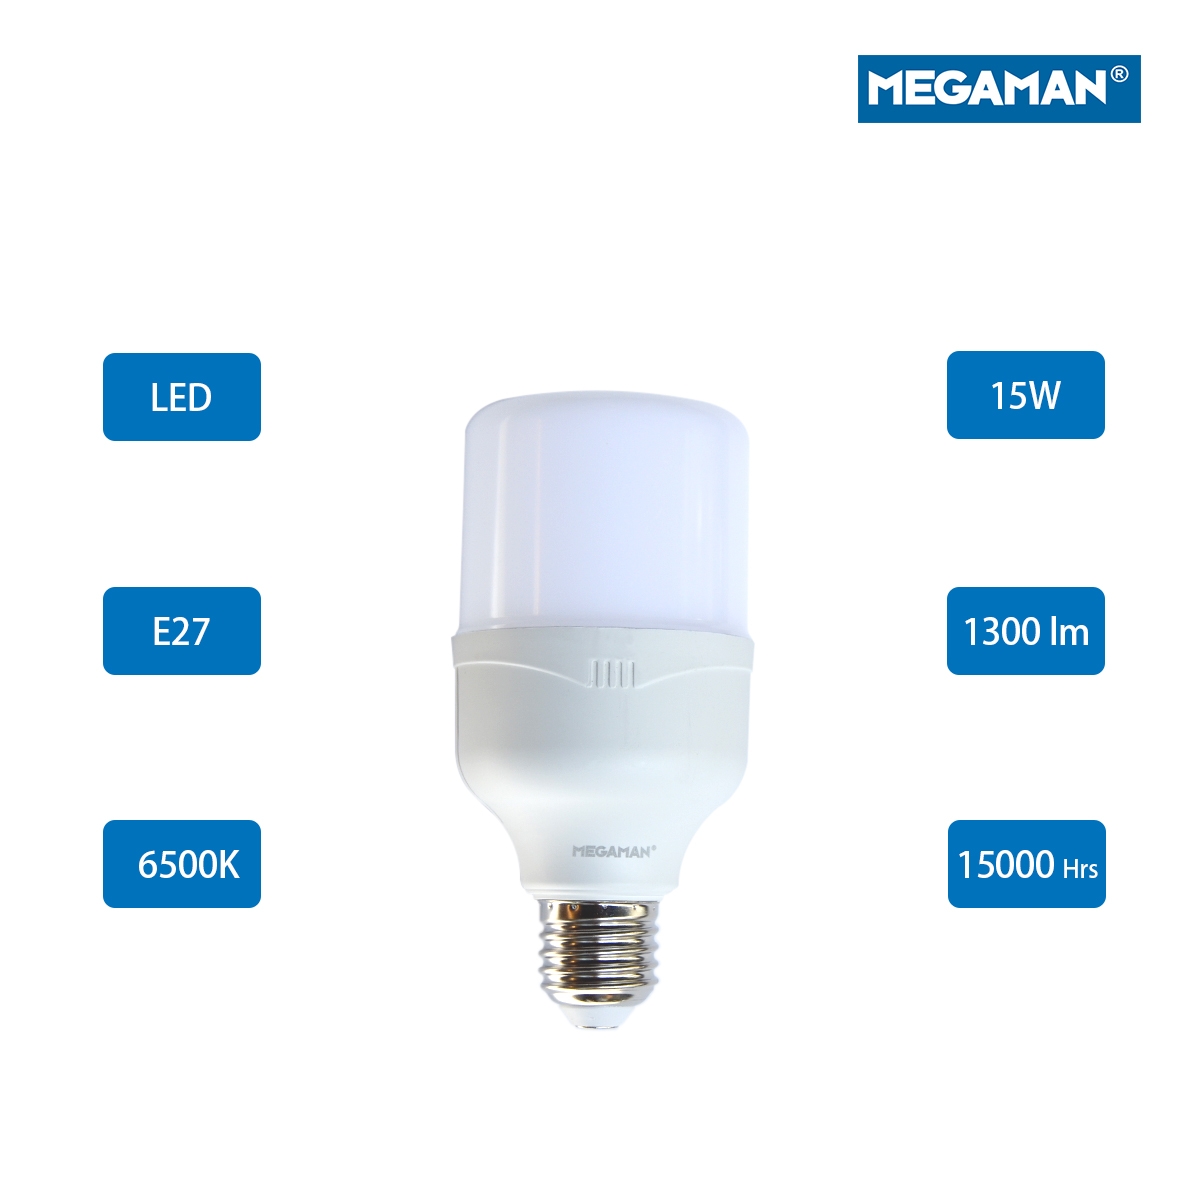 Megaman LED Classic Bulb E27  15W 6500K - Day Light